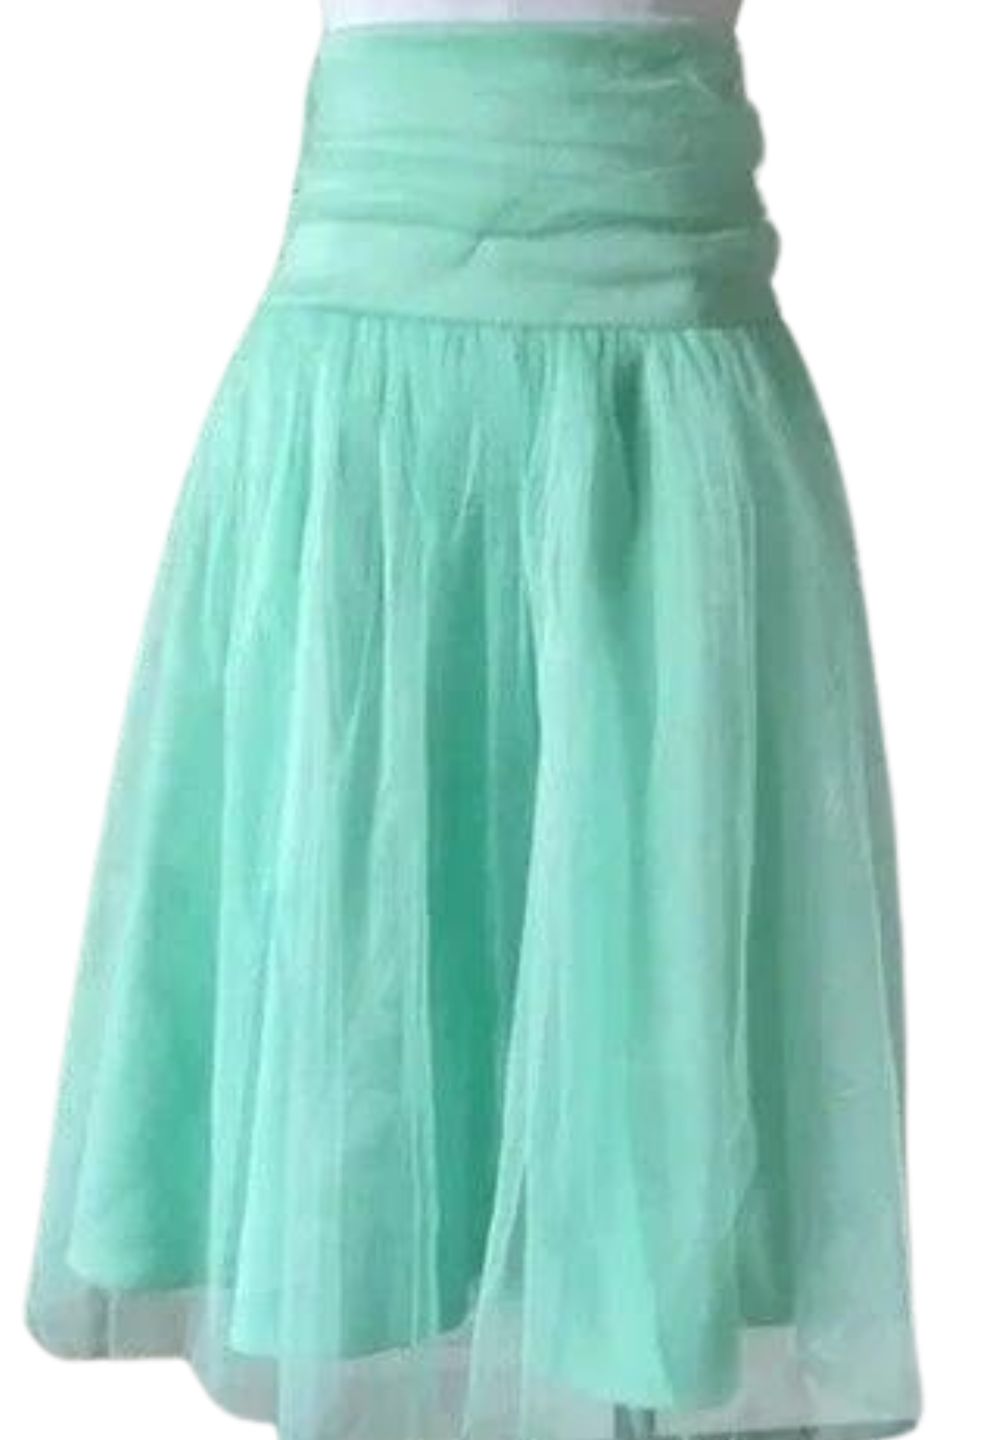 Kiyonna Mint Tulle Skirt, Size 4X